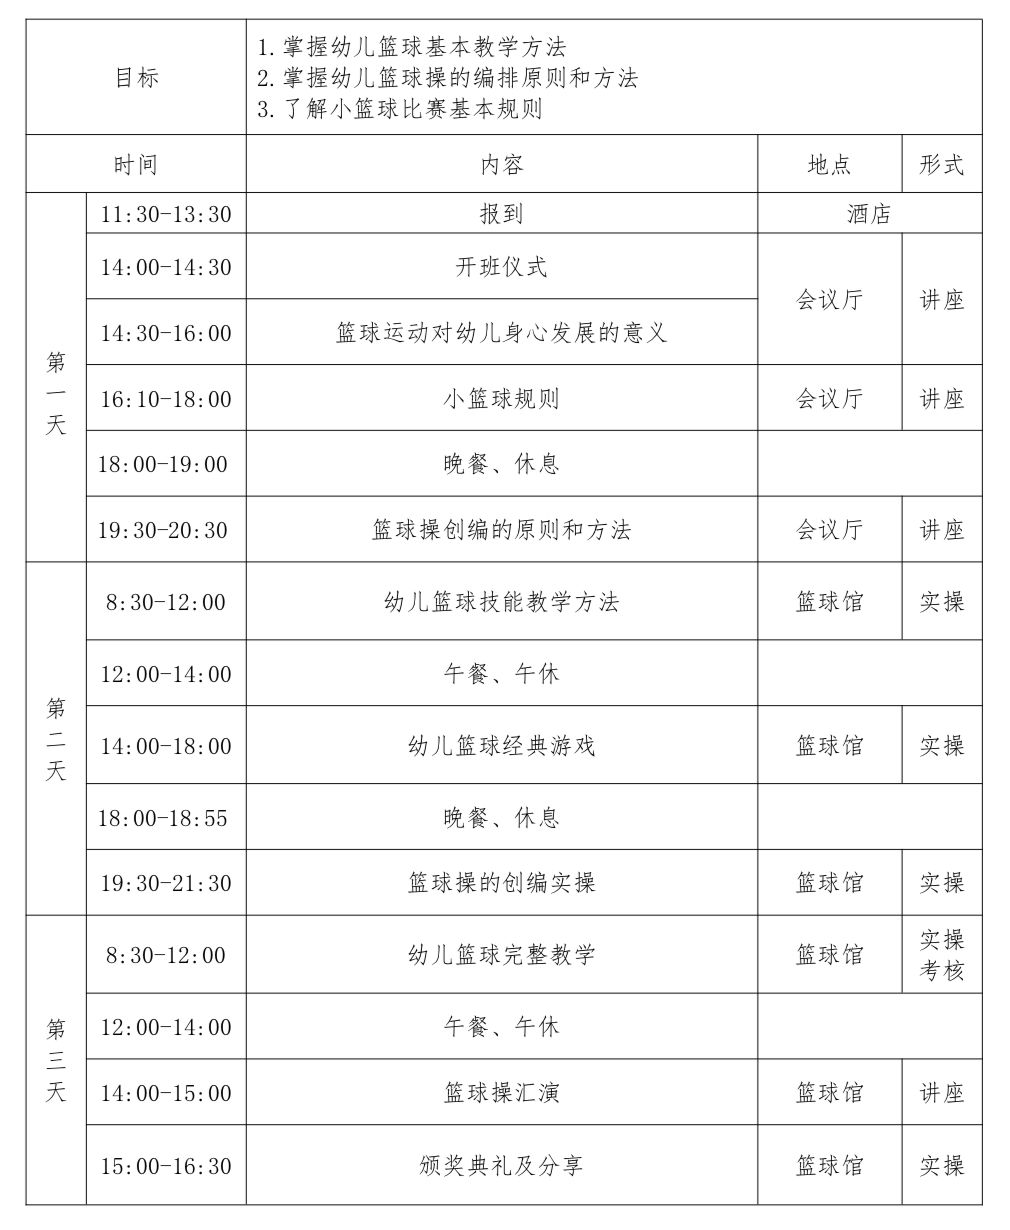 第四期广东省幼儿篮球初级教练员认证培训班现